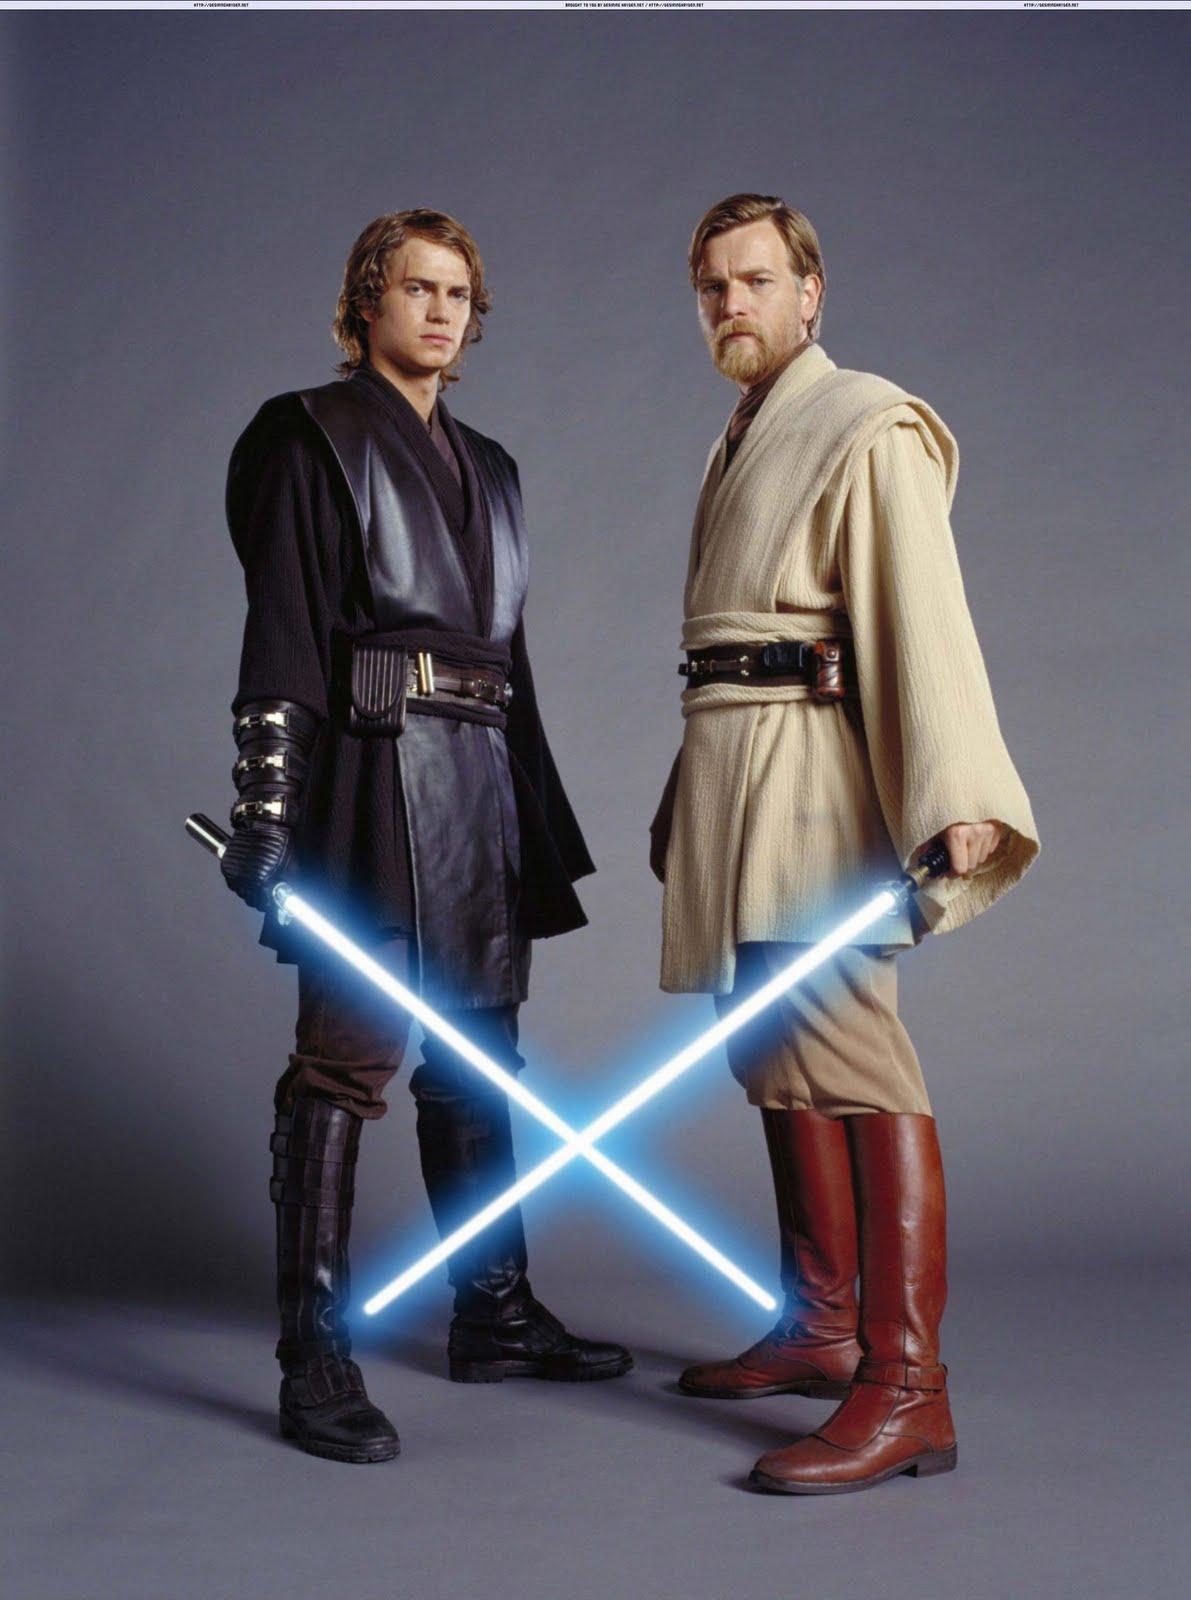 Anakin Skywalker Episode 3. Star Wars episode 3 anakin skywalker